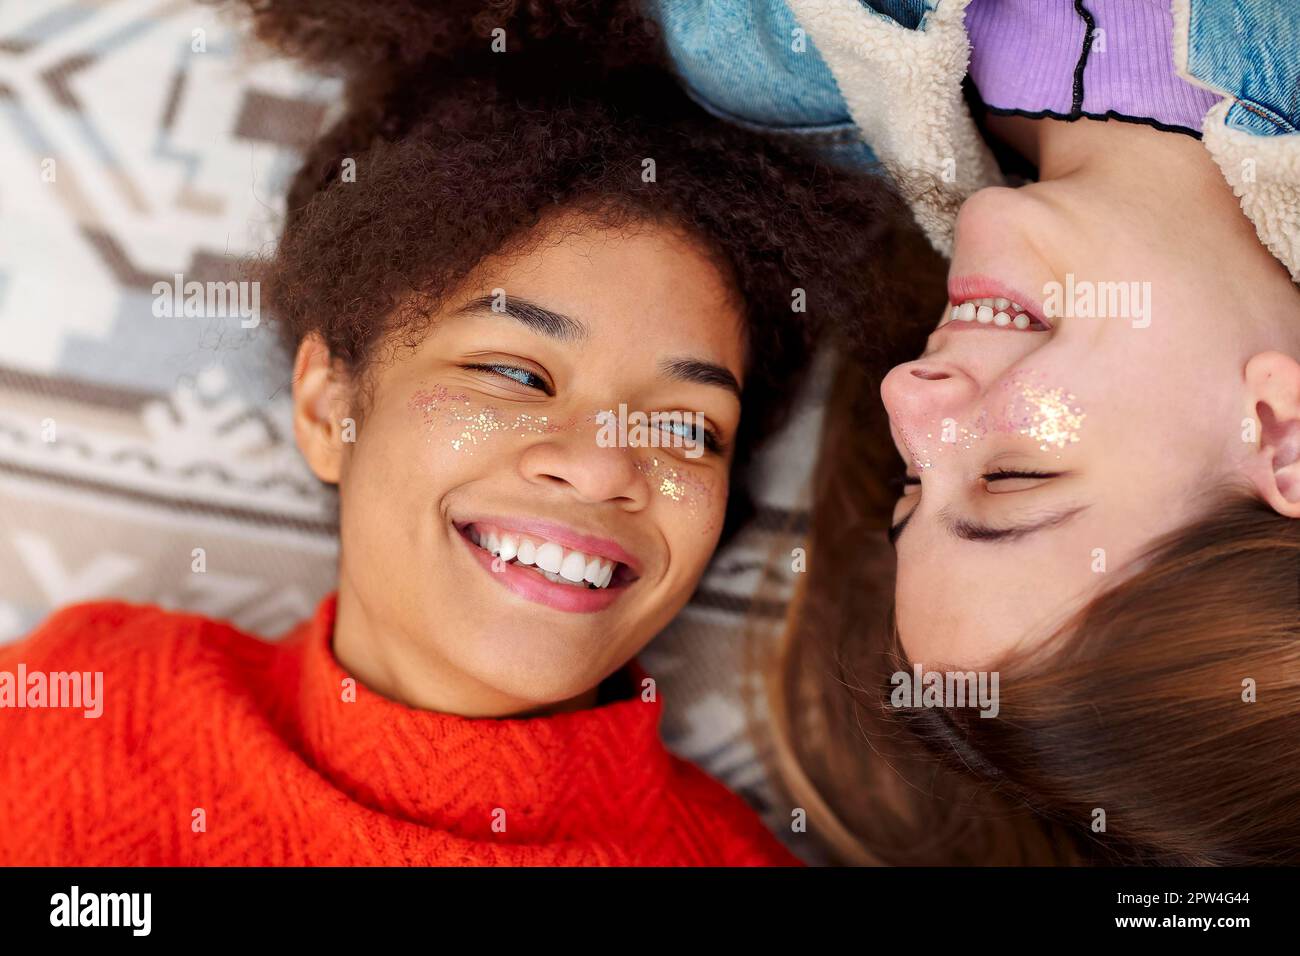 Amicizia femminile. Due giovani amiche diverse di etnia afro-americana e caucasica che si guardano con amore mentre si riposano a pietà Foto Stock